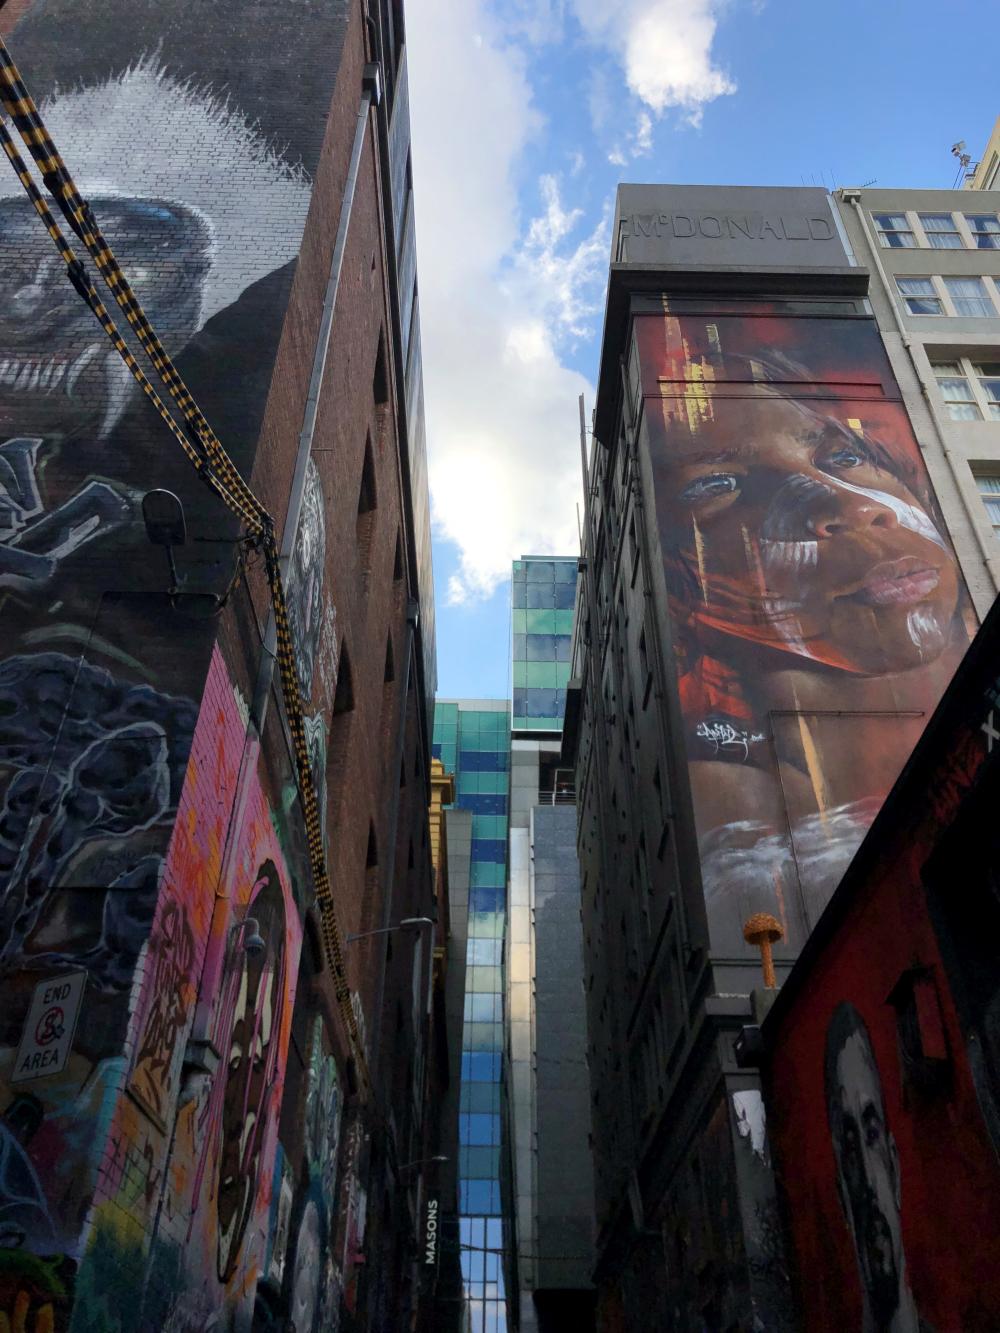 Bild 5 - Abschnitt Melbourne ein gerechtfertigter Hype (Graffiti Laneway)_web.jpg